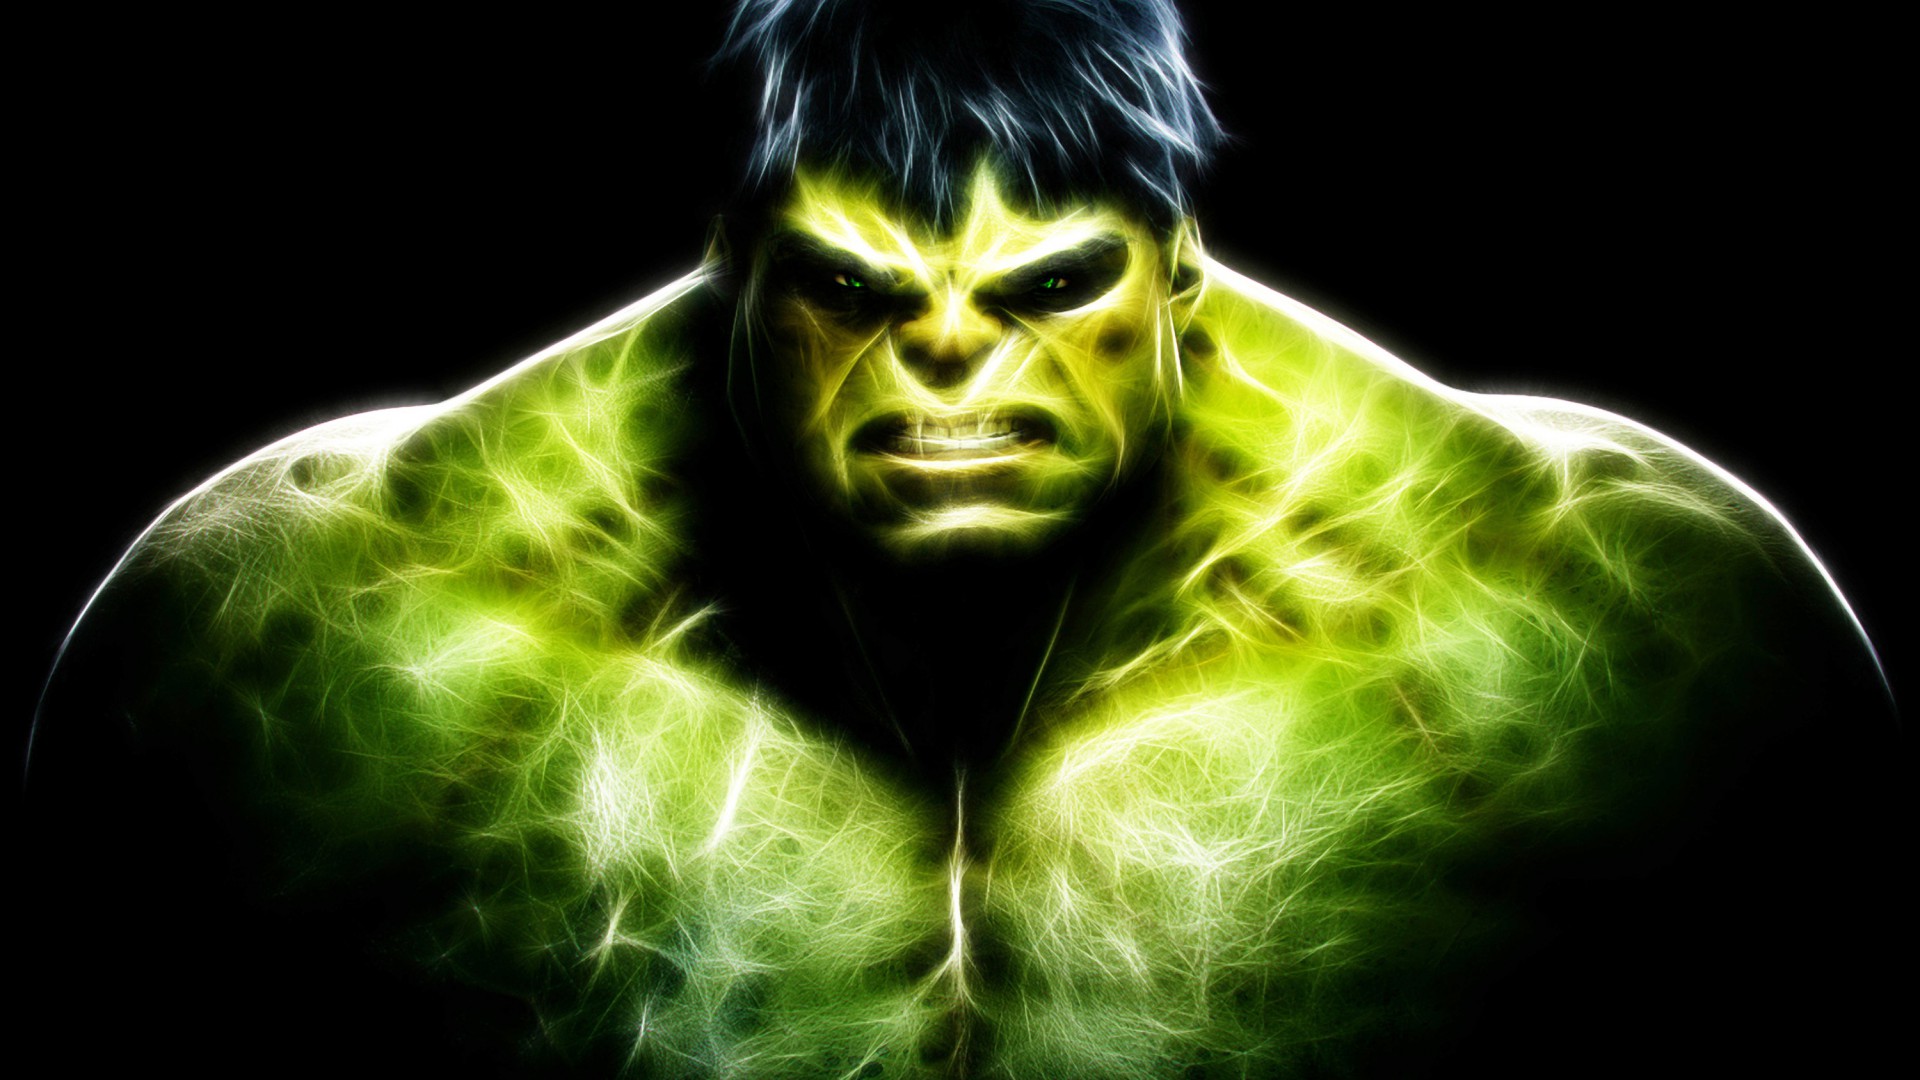 [49+] Incredible Hulk Desktop Wallpaper on WallpaperSafari